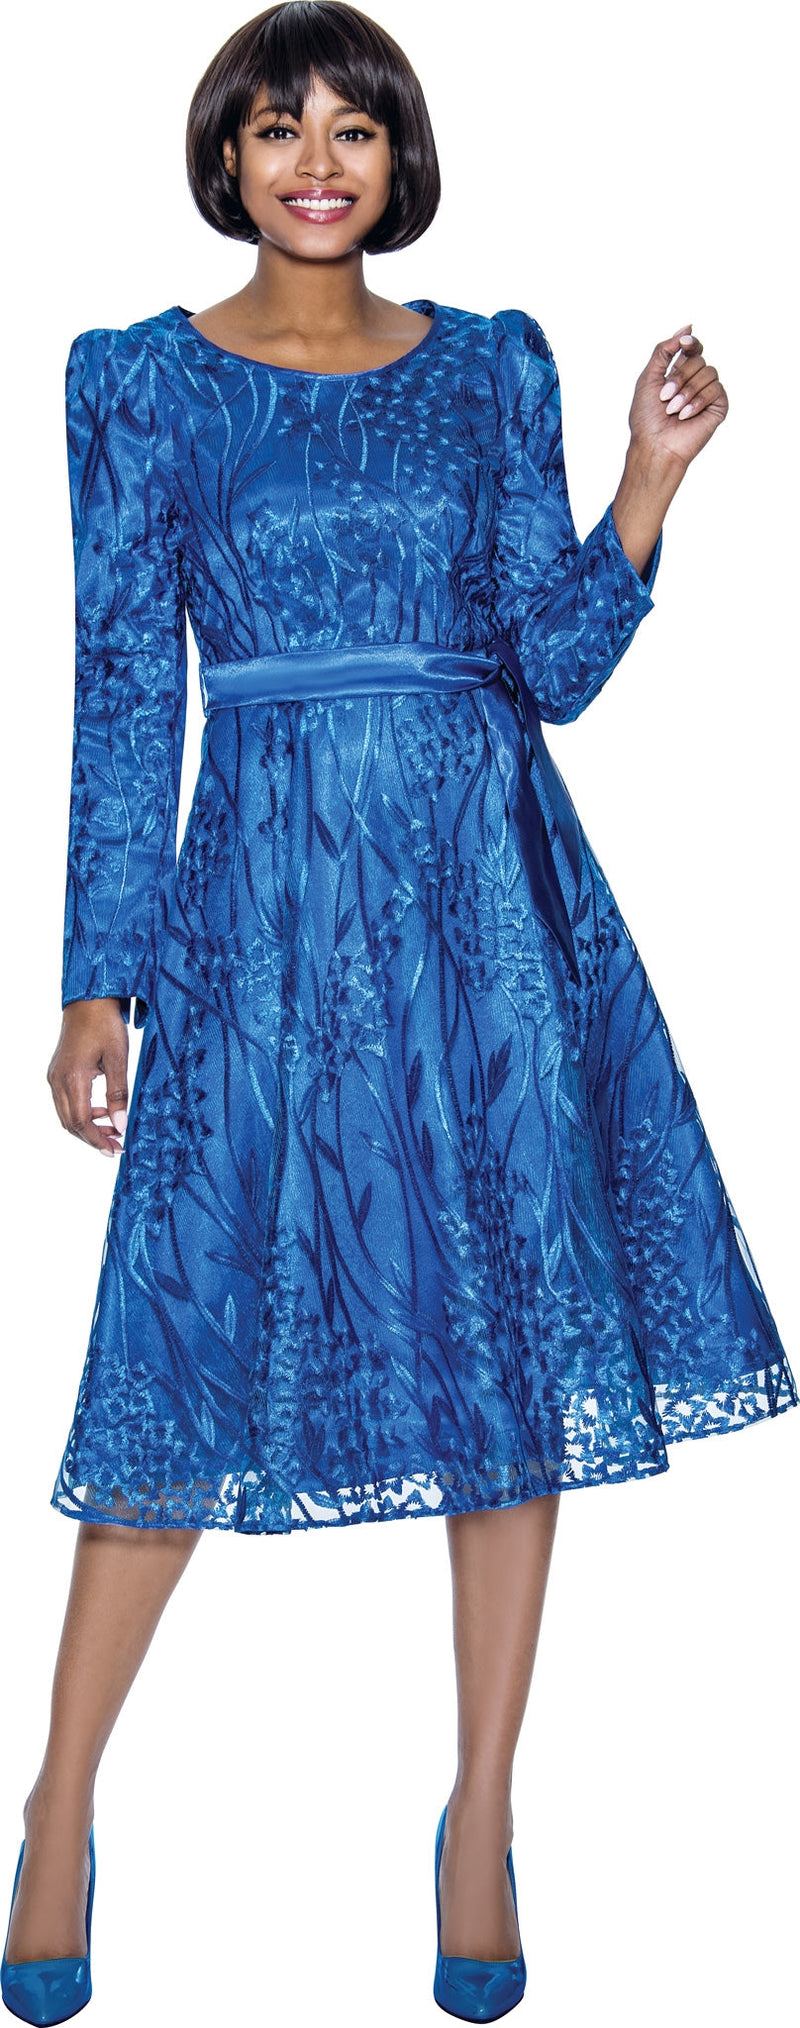 Terramina Church Dress 7015-Royal Blue - Church Suits For Less